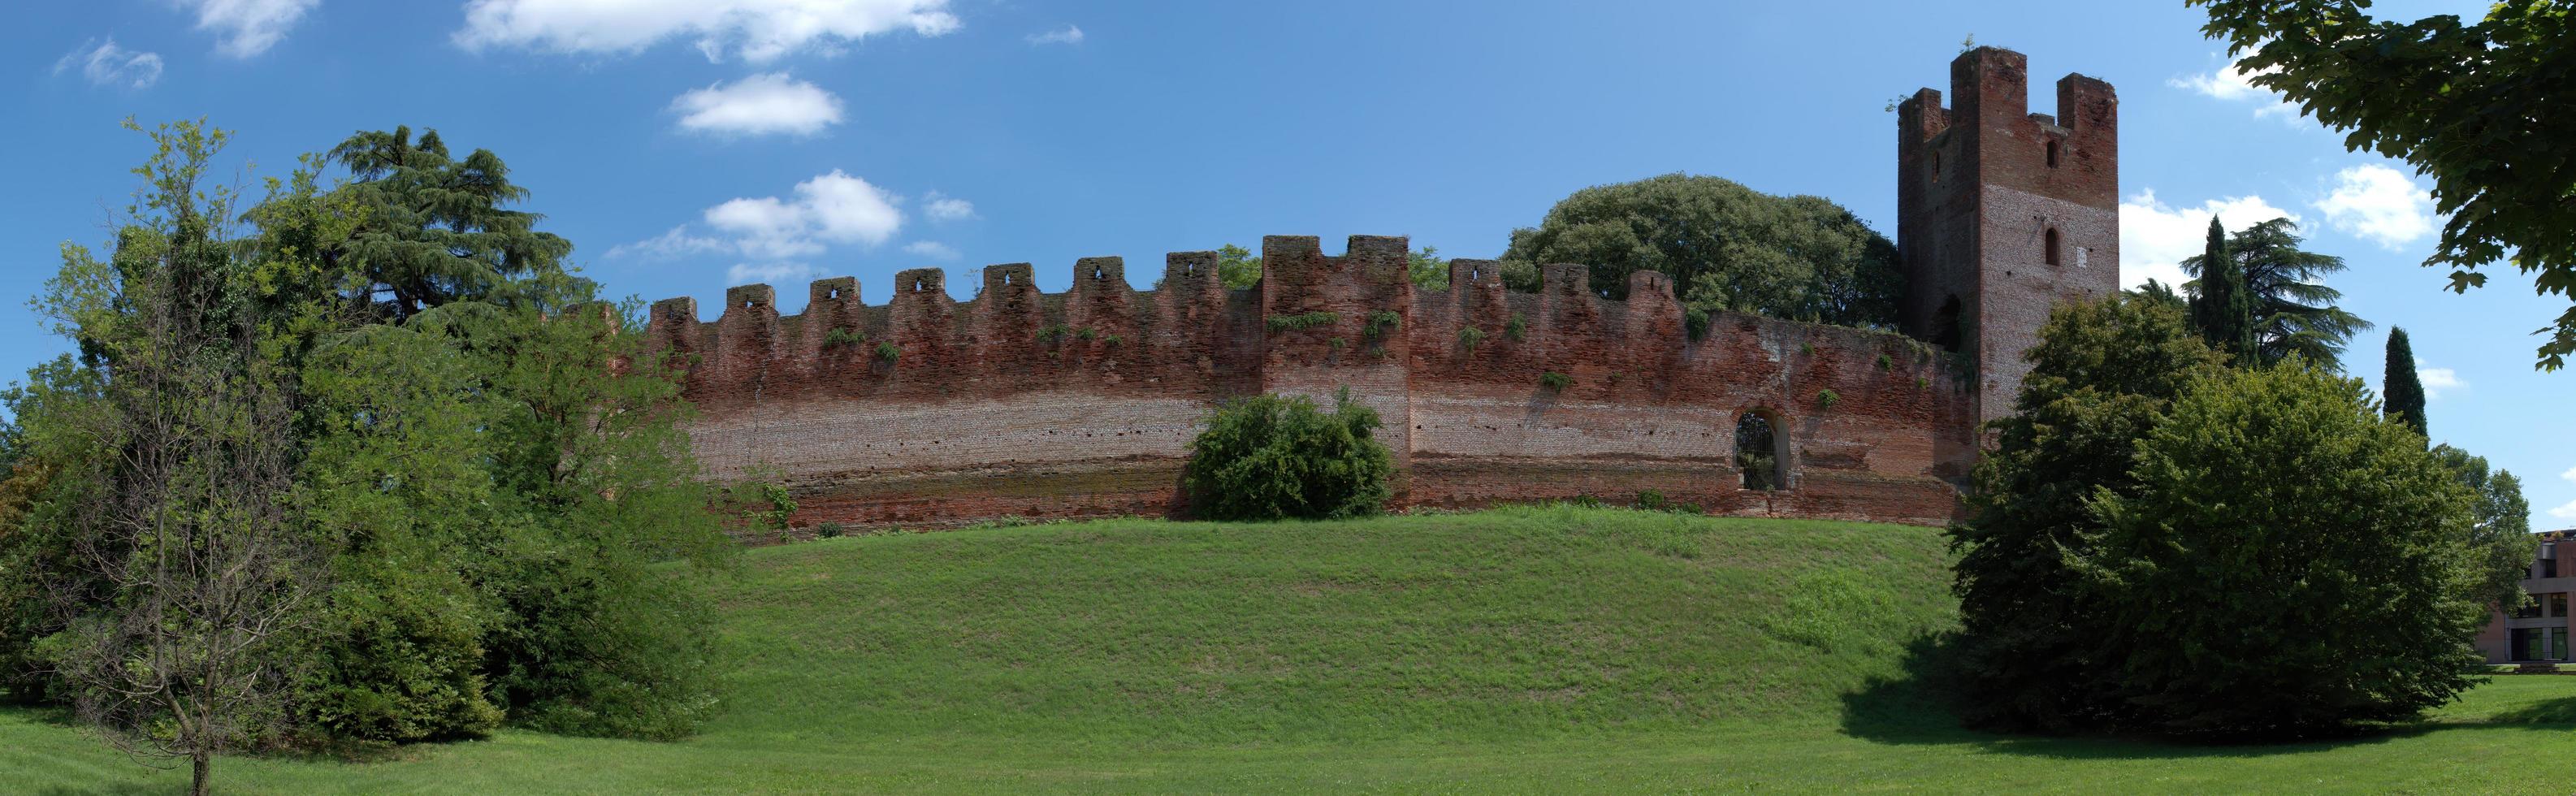 panorama delle mura del borgo medievale fortificato di castelfranco veneto. treviso, italia. foto